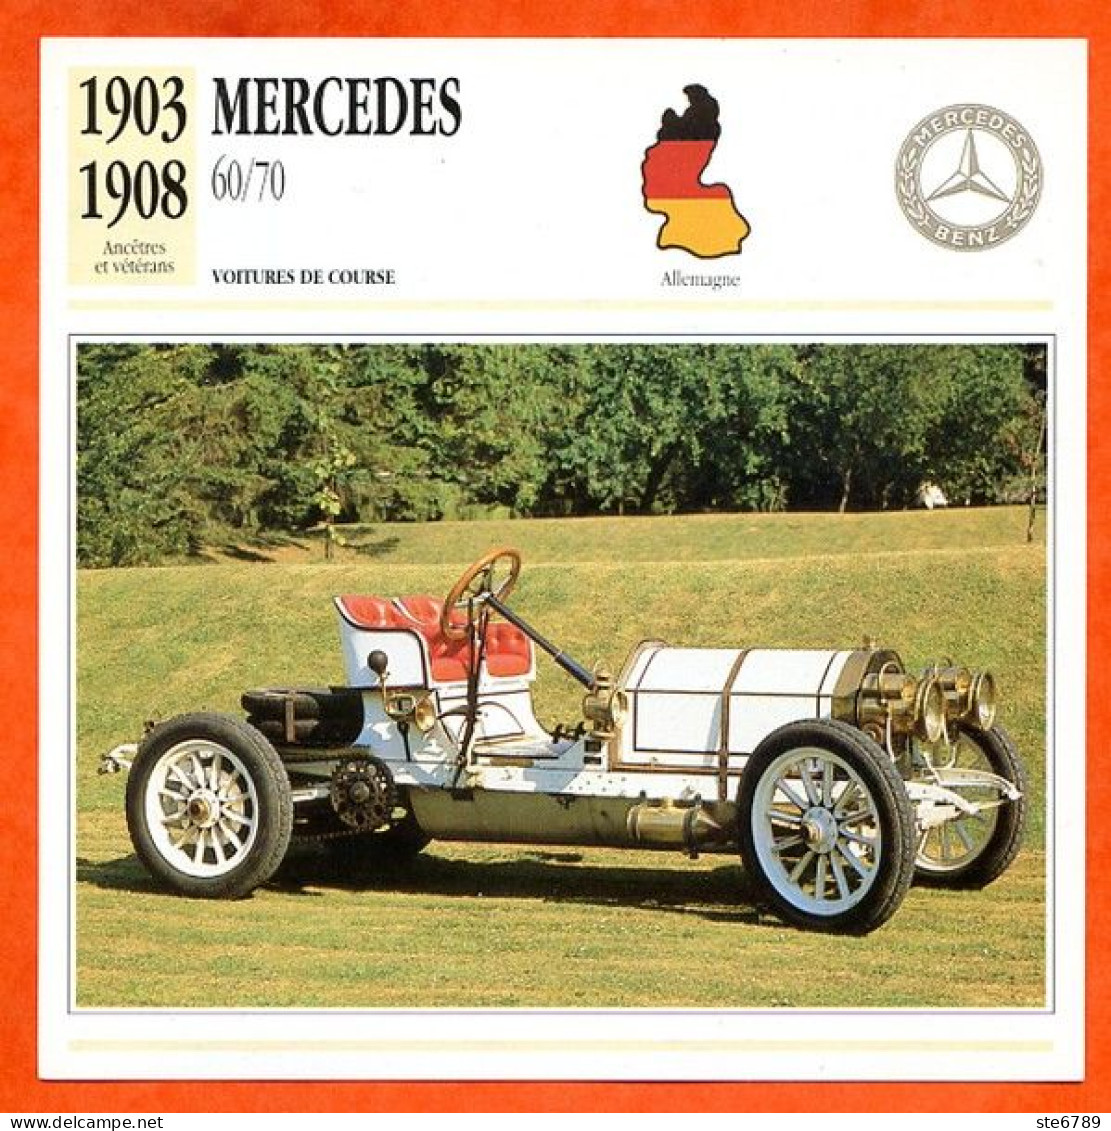 MERCEDES 60/70 1903 Voiture De Course Allemagne Fiche Technique Automobile - Voitures